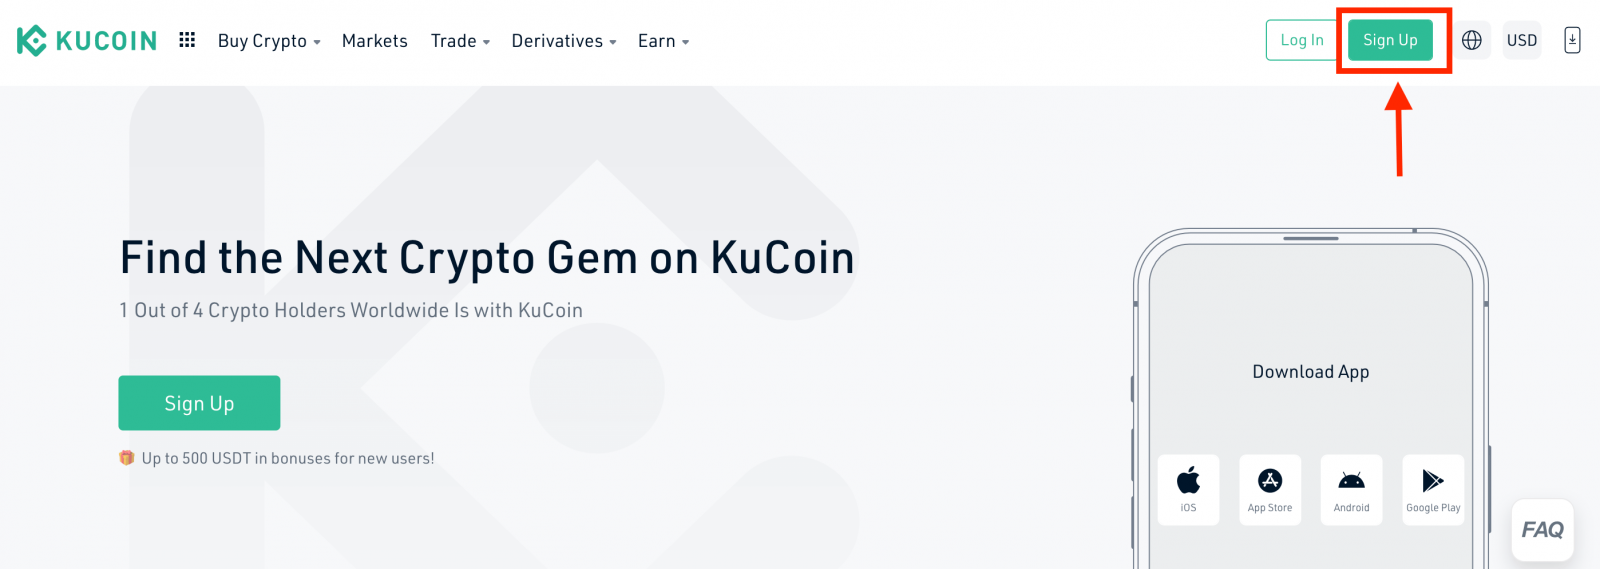 如何在 KuCoin 中注册和验证账户